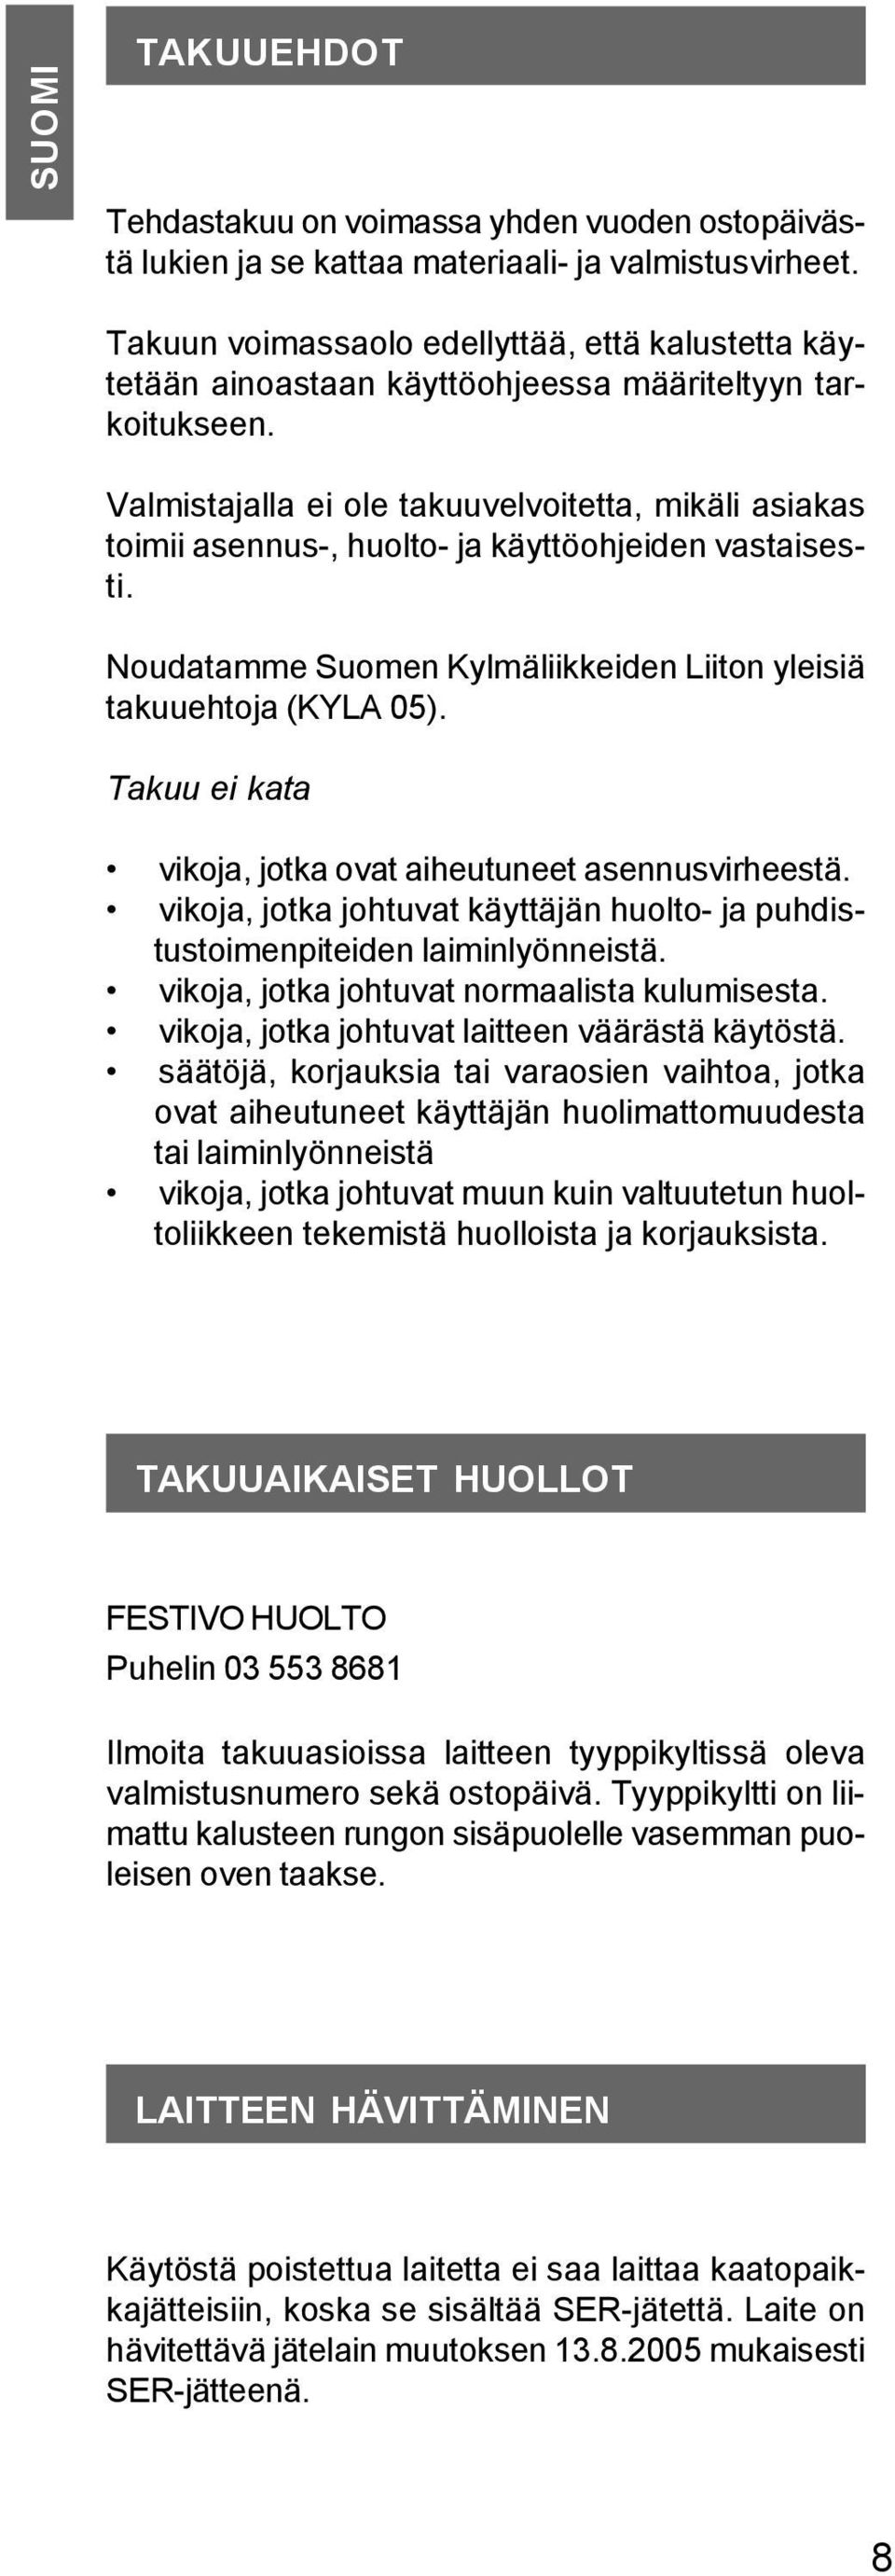 Valmistajalla ei ole takuuvelvoitetta, mikäli asiakas toimii asennus-, huolto- ja käyttöohjeiden vastaisesti. Noudatamme Suomen Kylmäliikkeiden Liiton yleisiä takuuehtoja (KYLA 05).